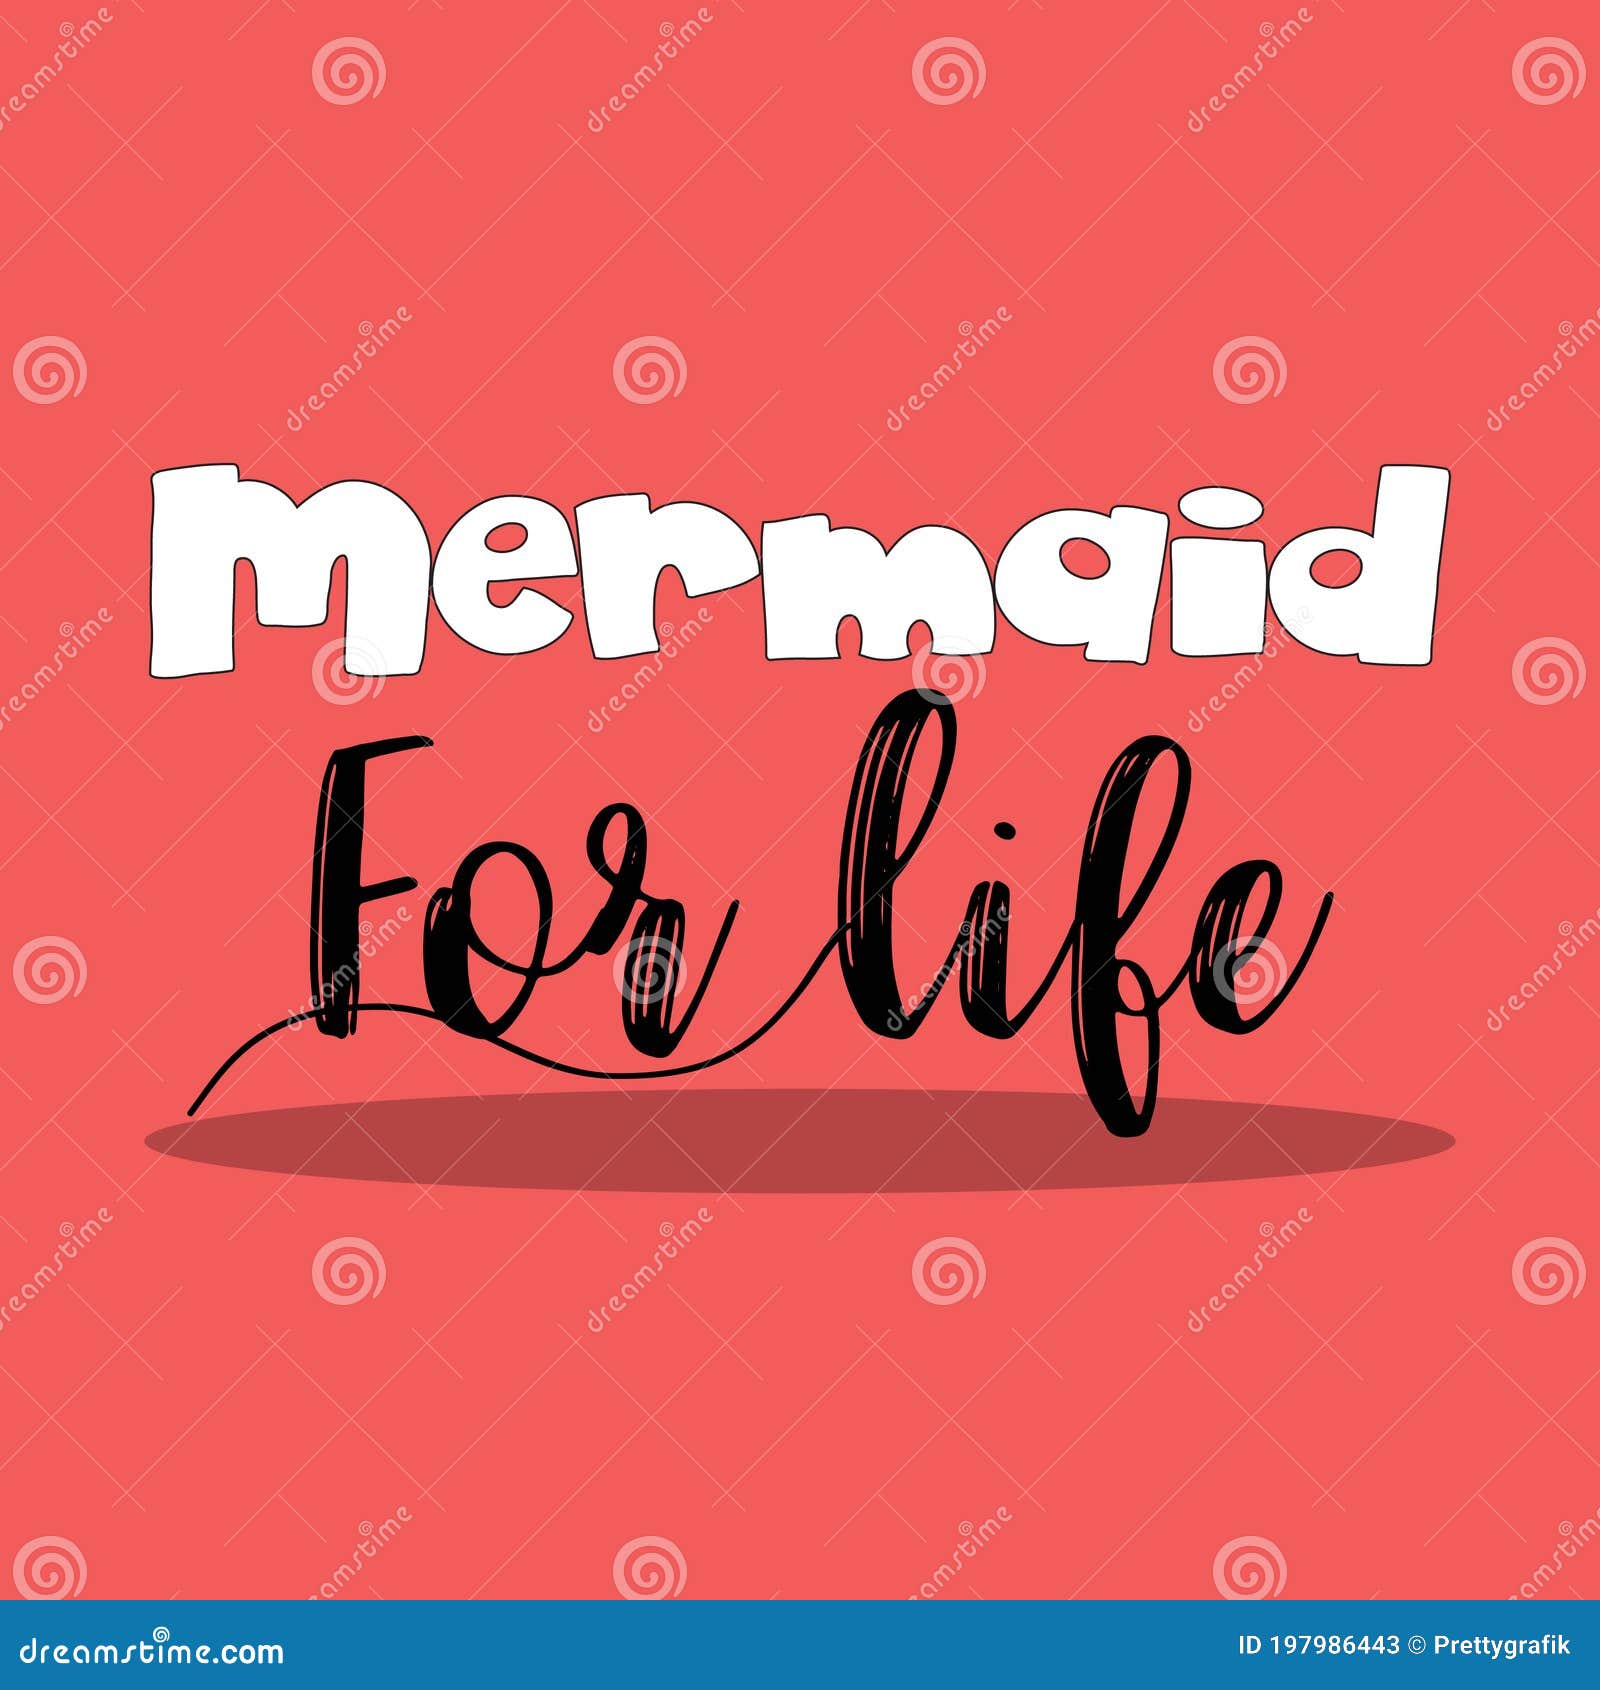 mermaid life 09